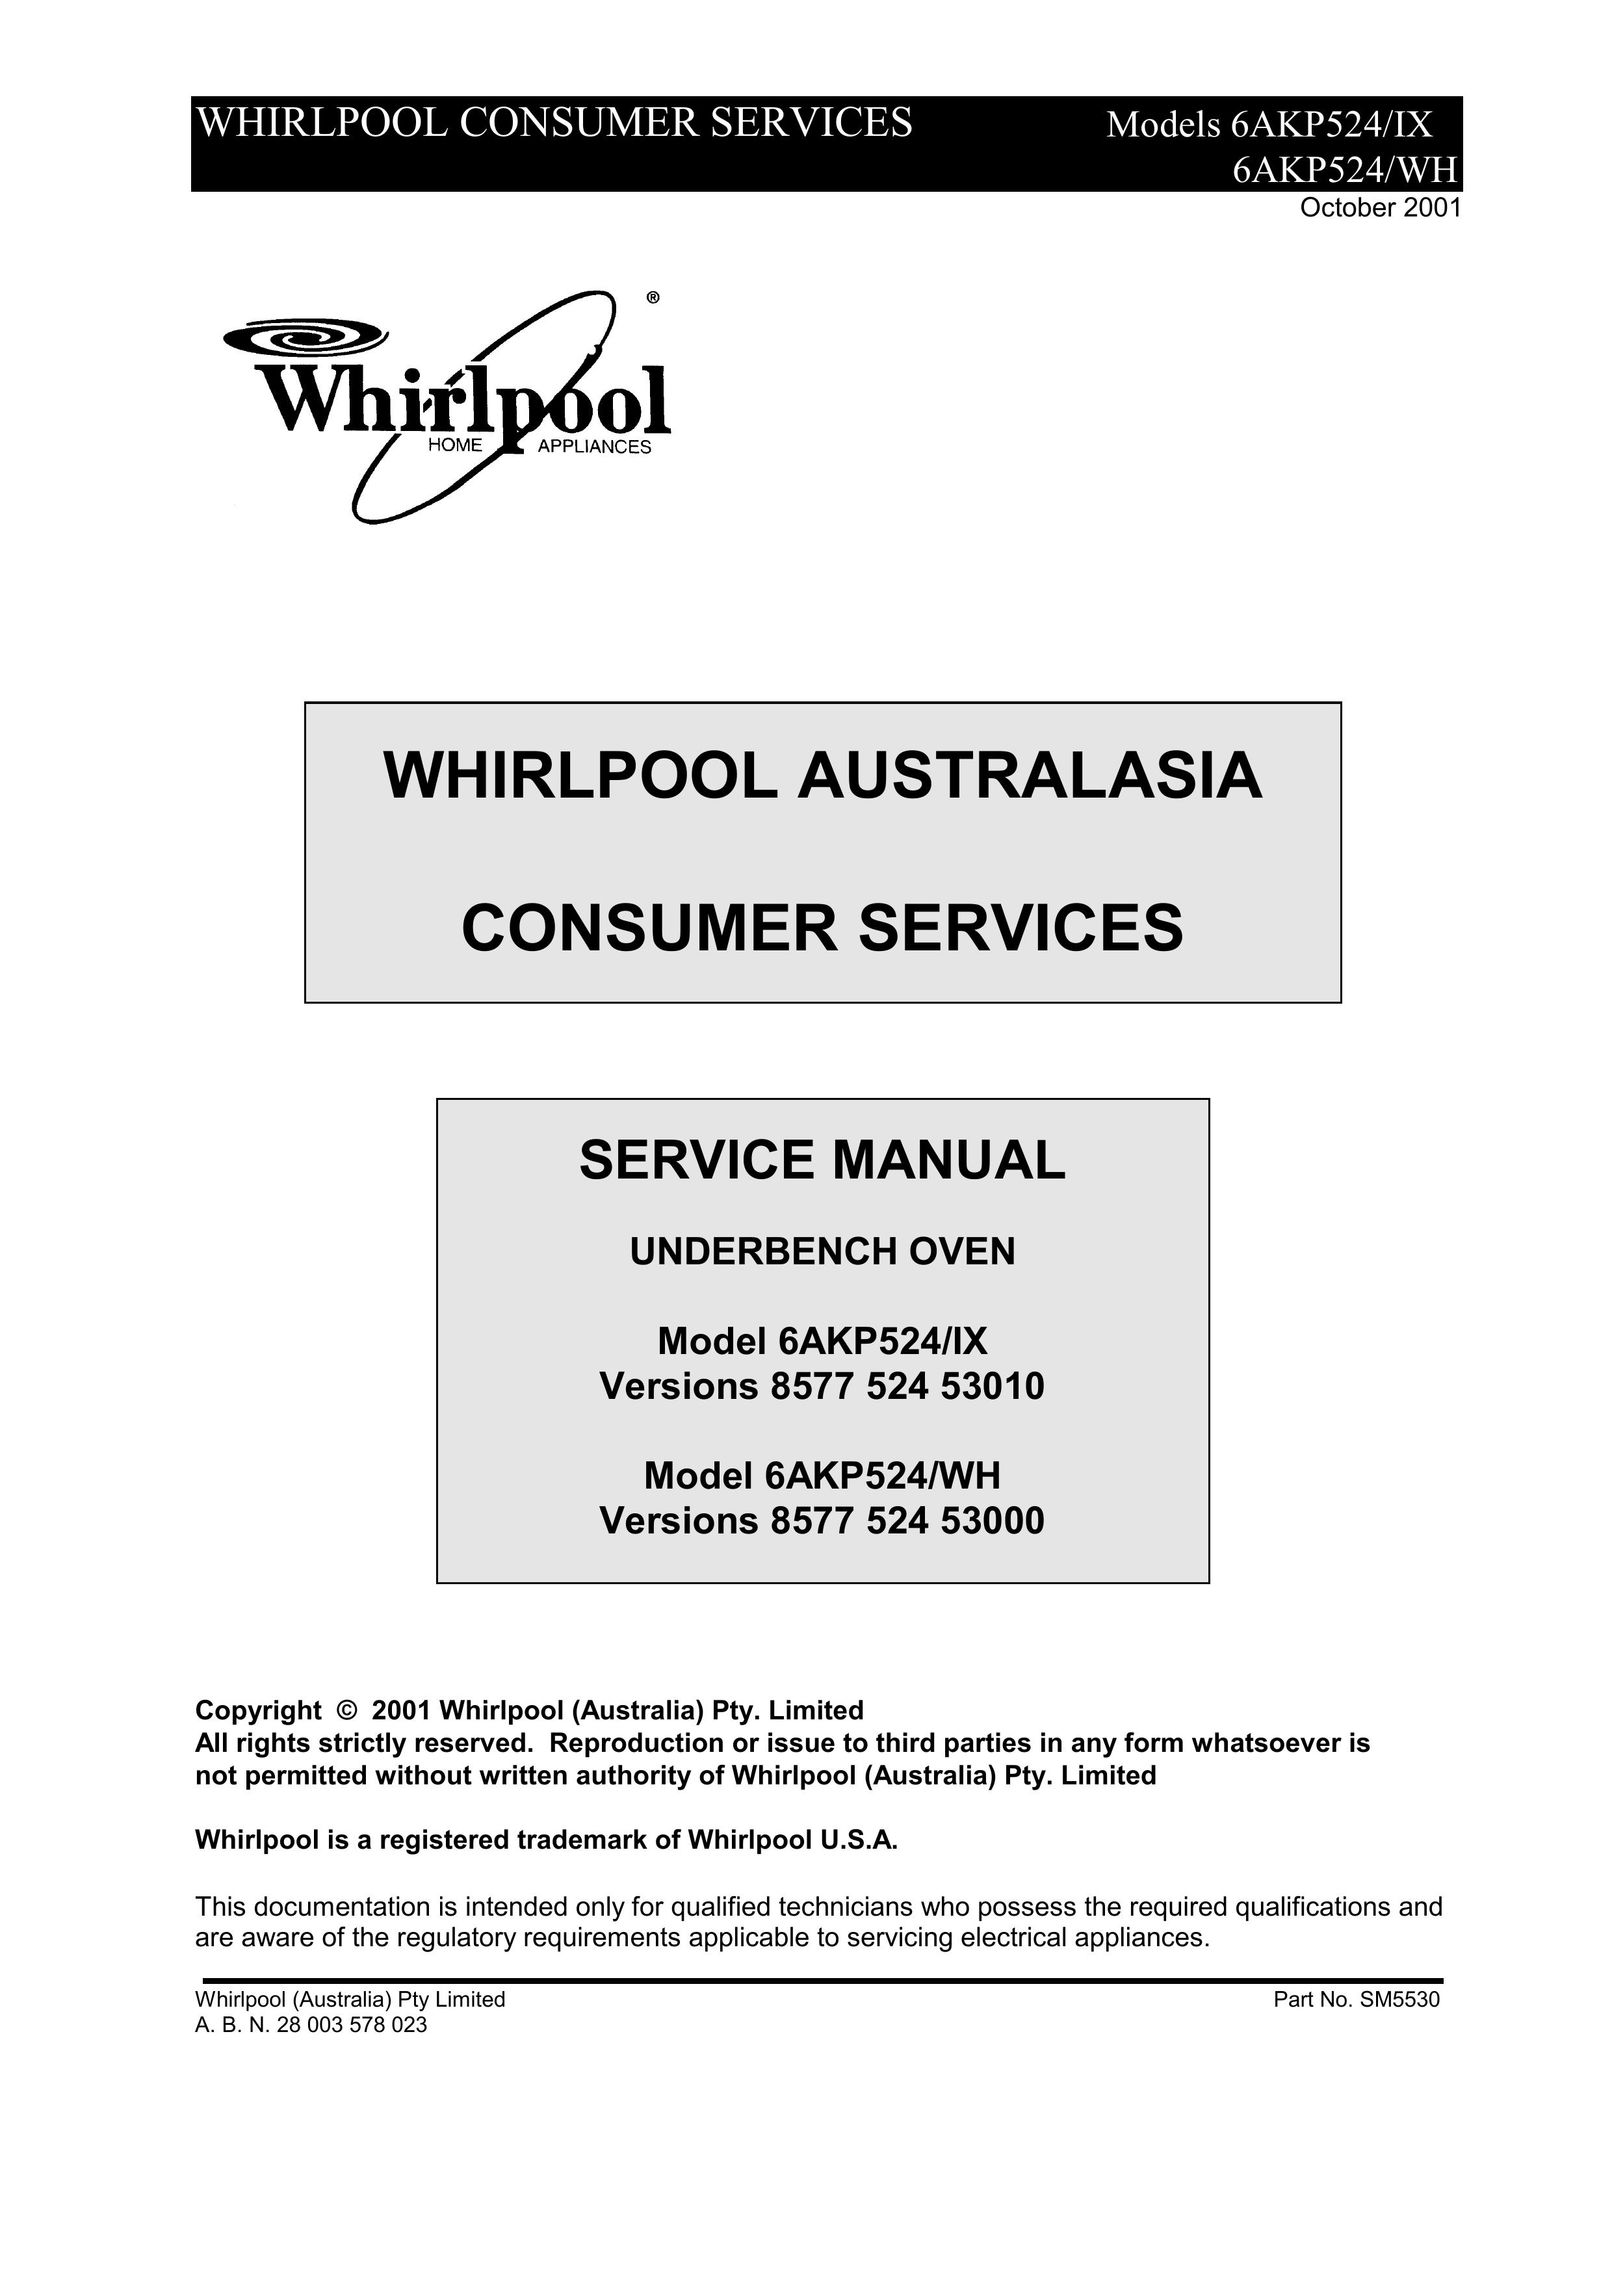 Whirlpool 6AKP524/IX Oven User Manual